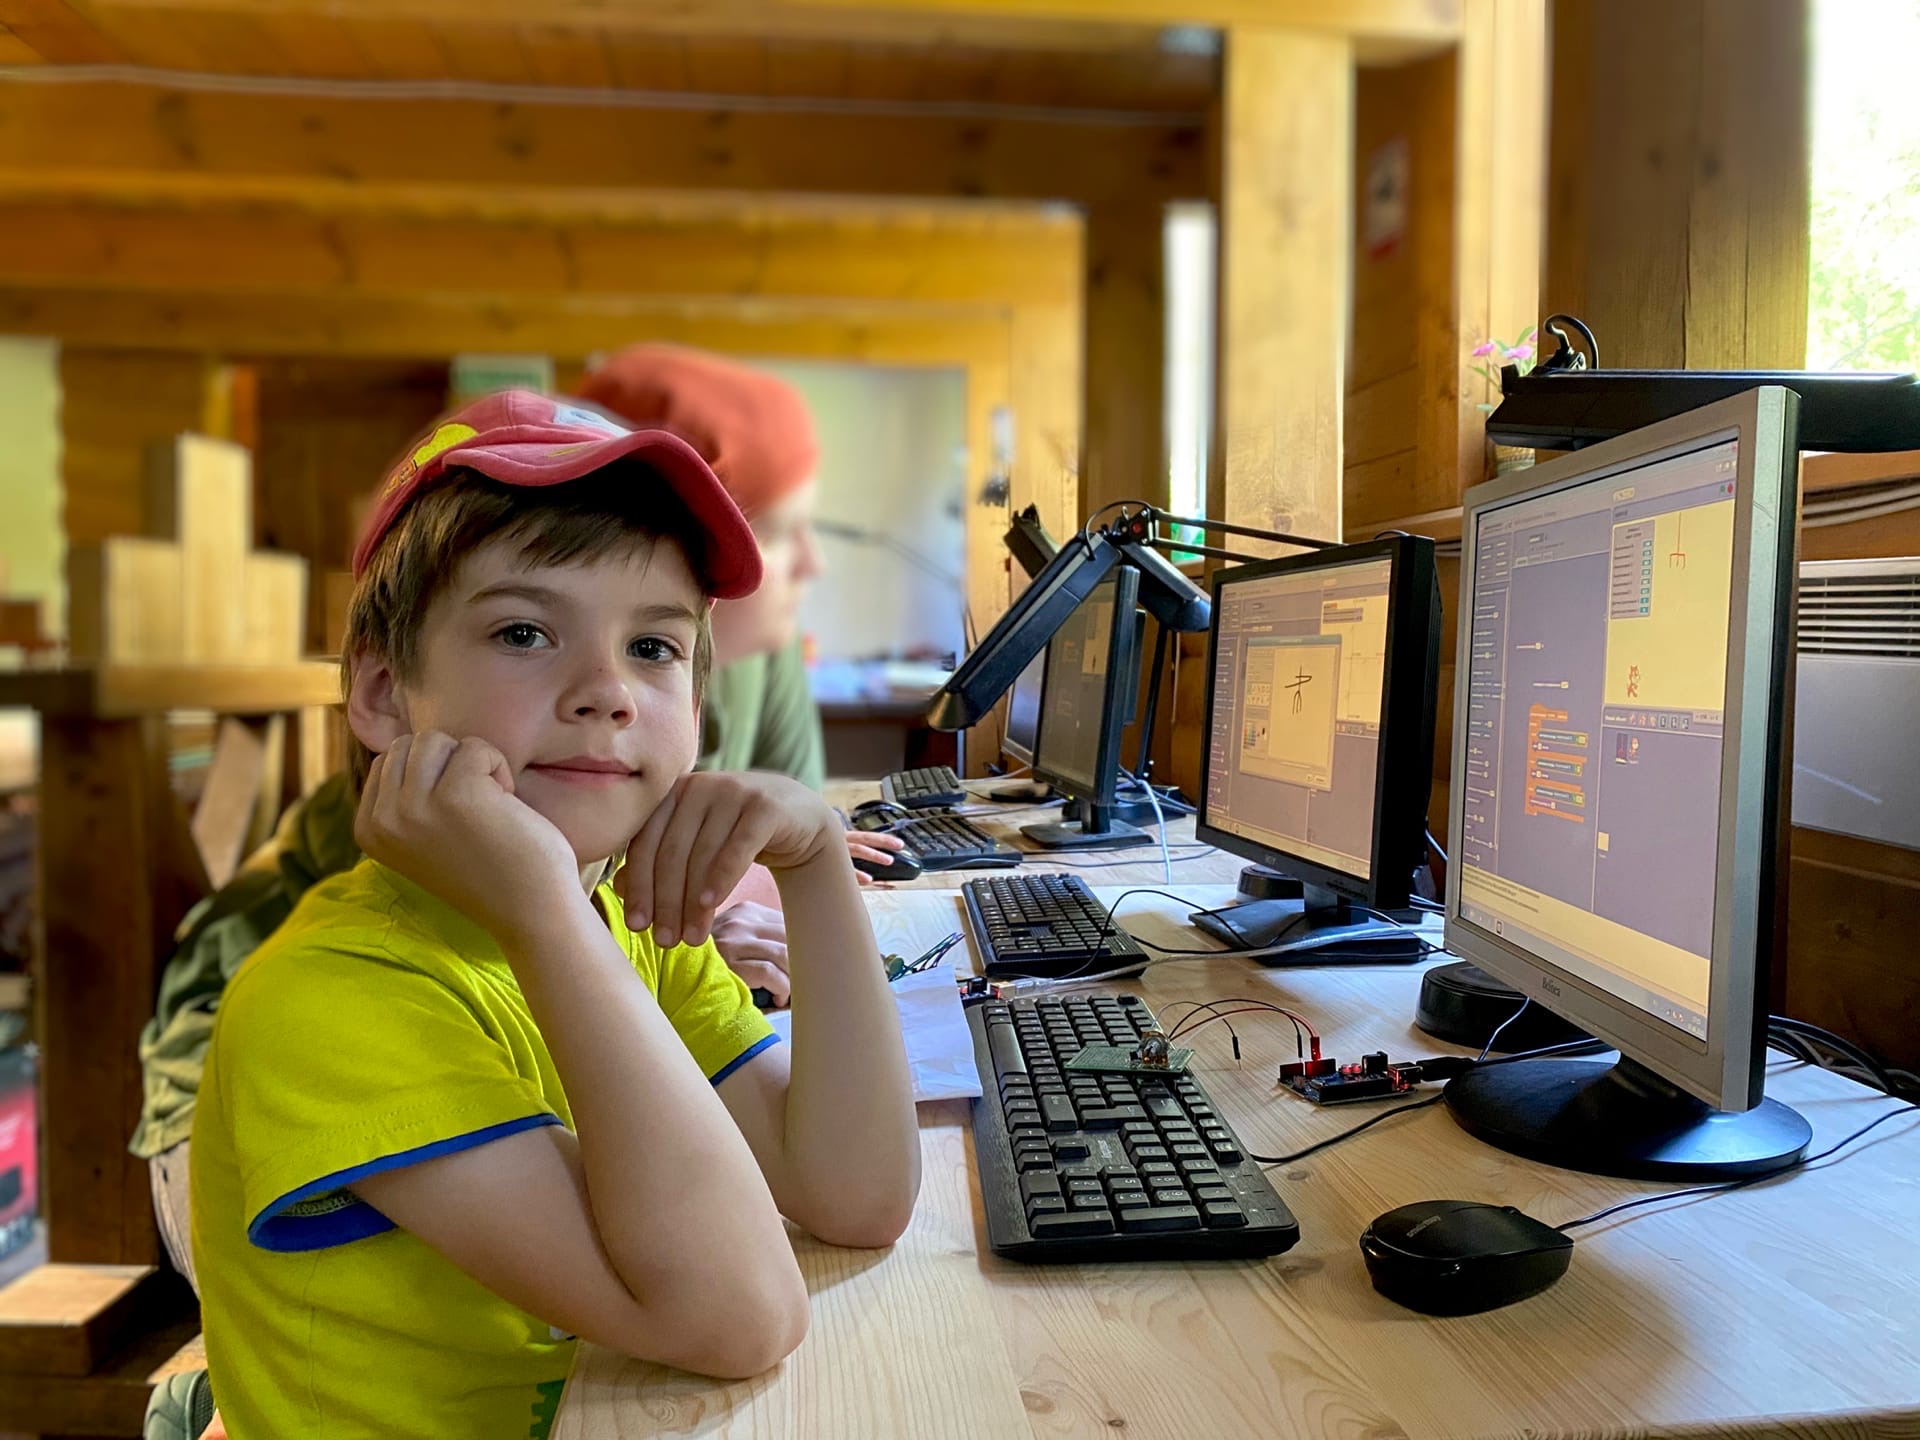 «AzimovCamp» – путевки в летний детский лагерь с занятиями программированием 2023, Ленинградская область, Выборгский район – 7.